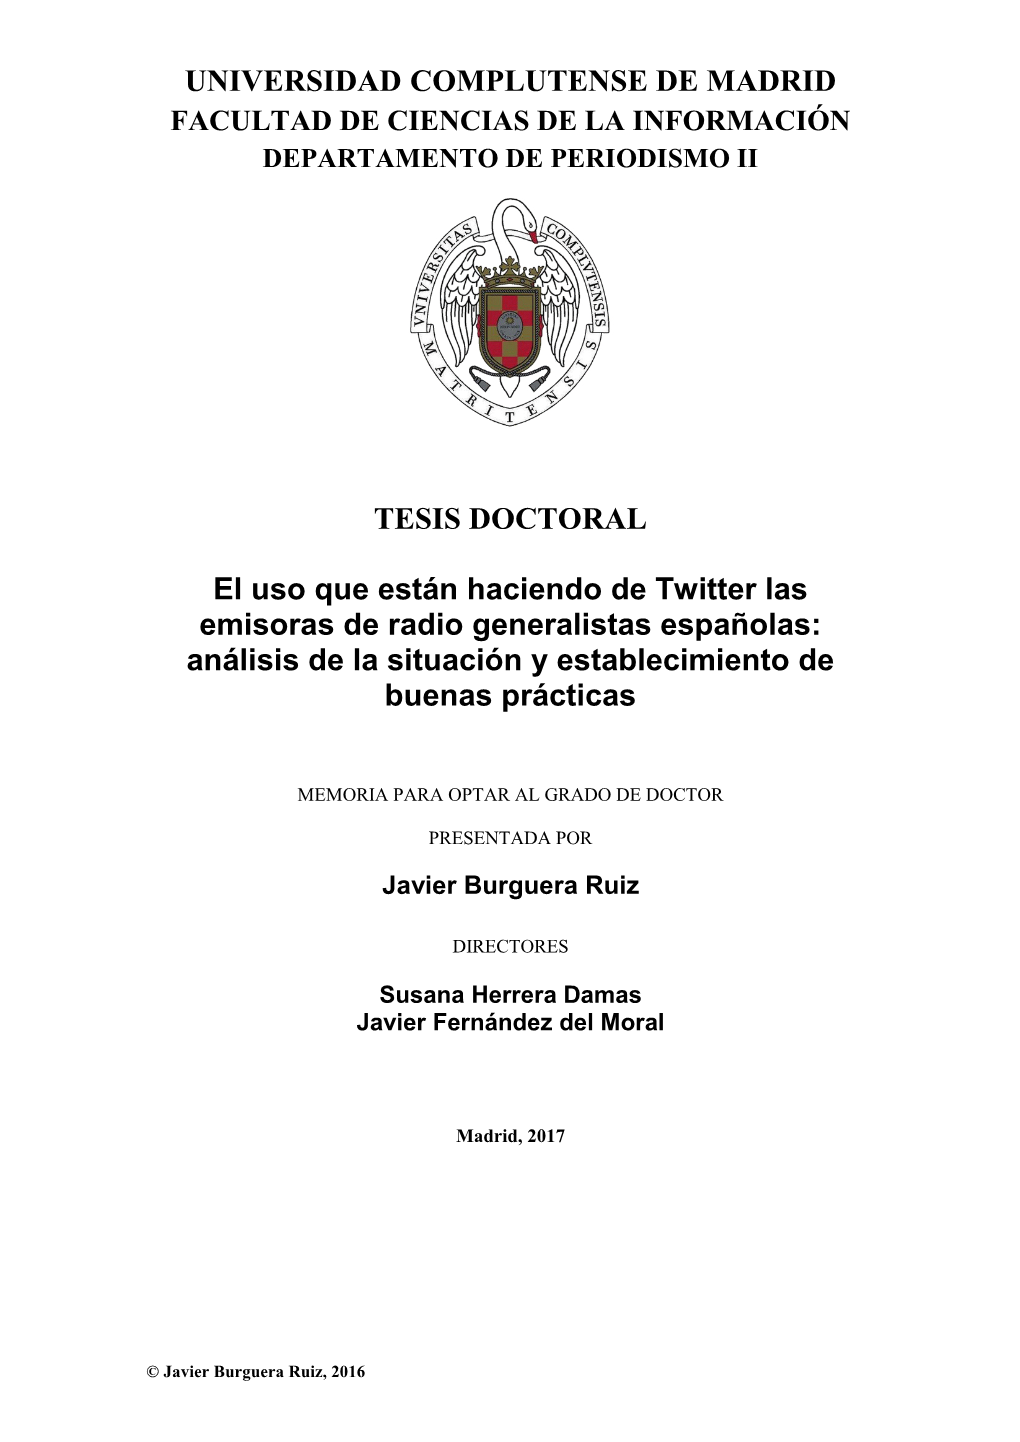 El Uso Que Están Haciendo De Twitter Las Emisoras De Radio Generalistas Españolas: Análisis De La Situación Y Establecimiento De Buenas Prácticas